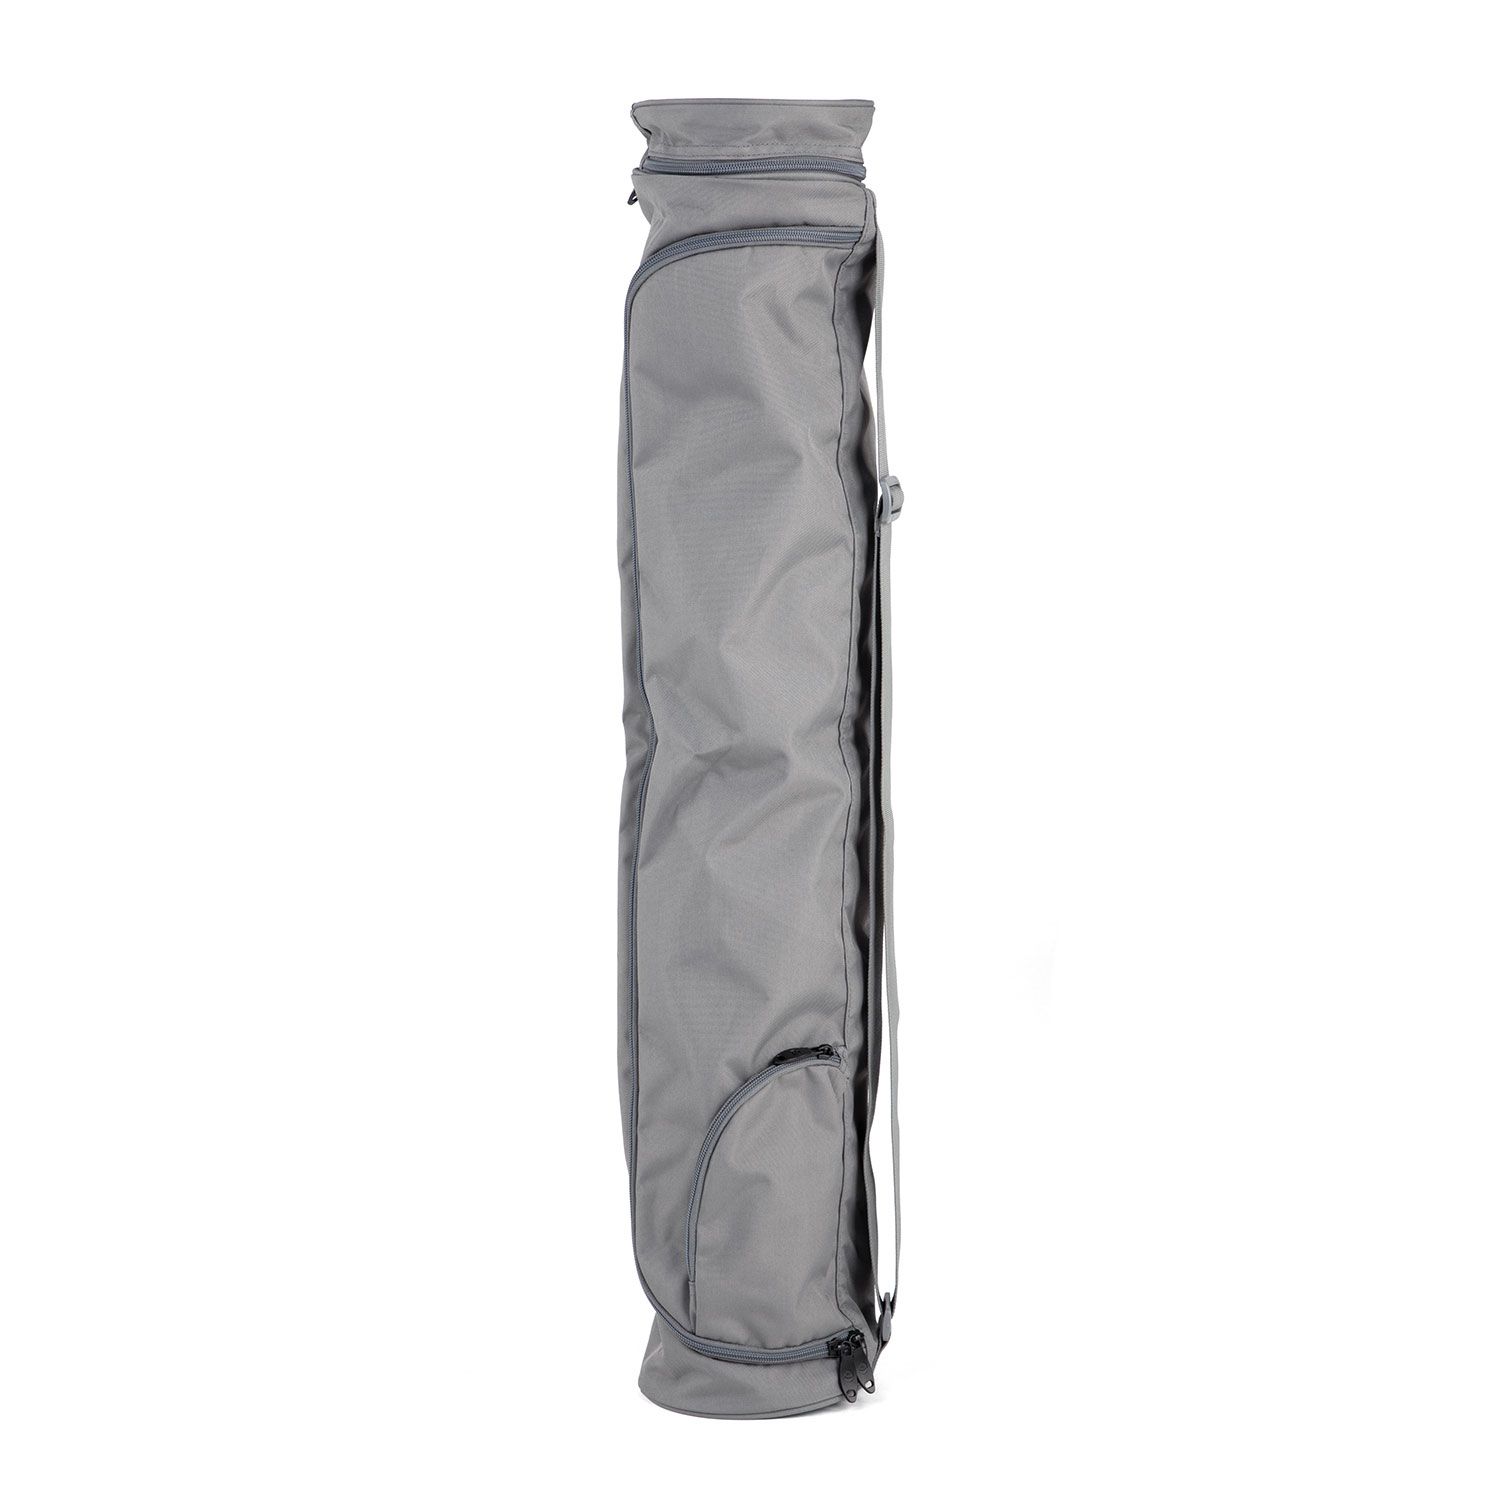 Yogamatten Tasche Asana Bag XXL 80 schiefer-grau, Polyester/Polyamide bestickt